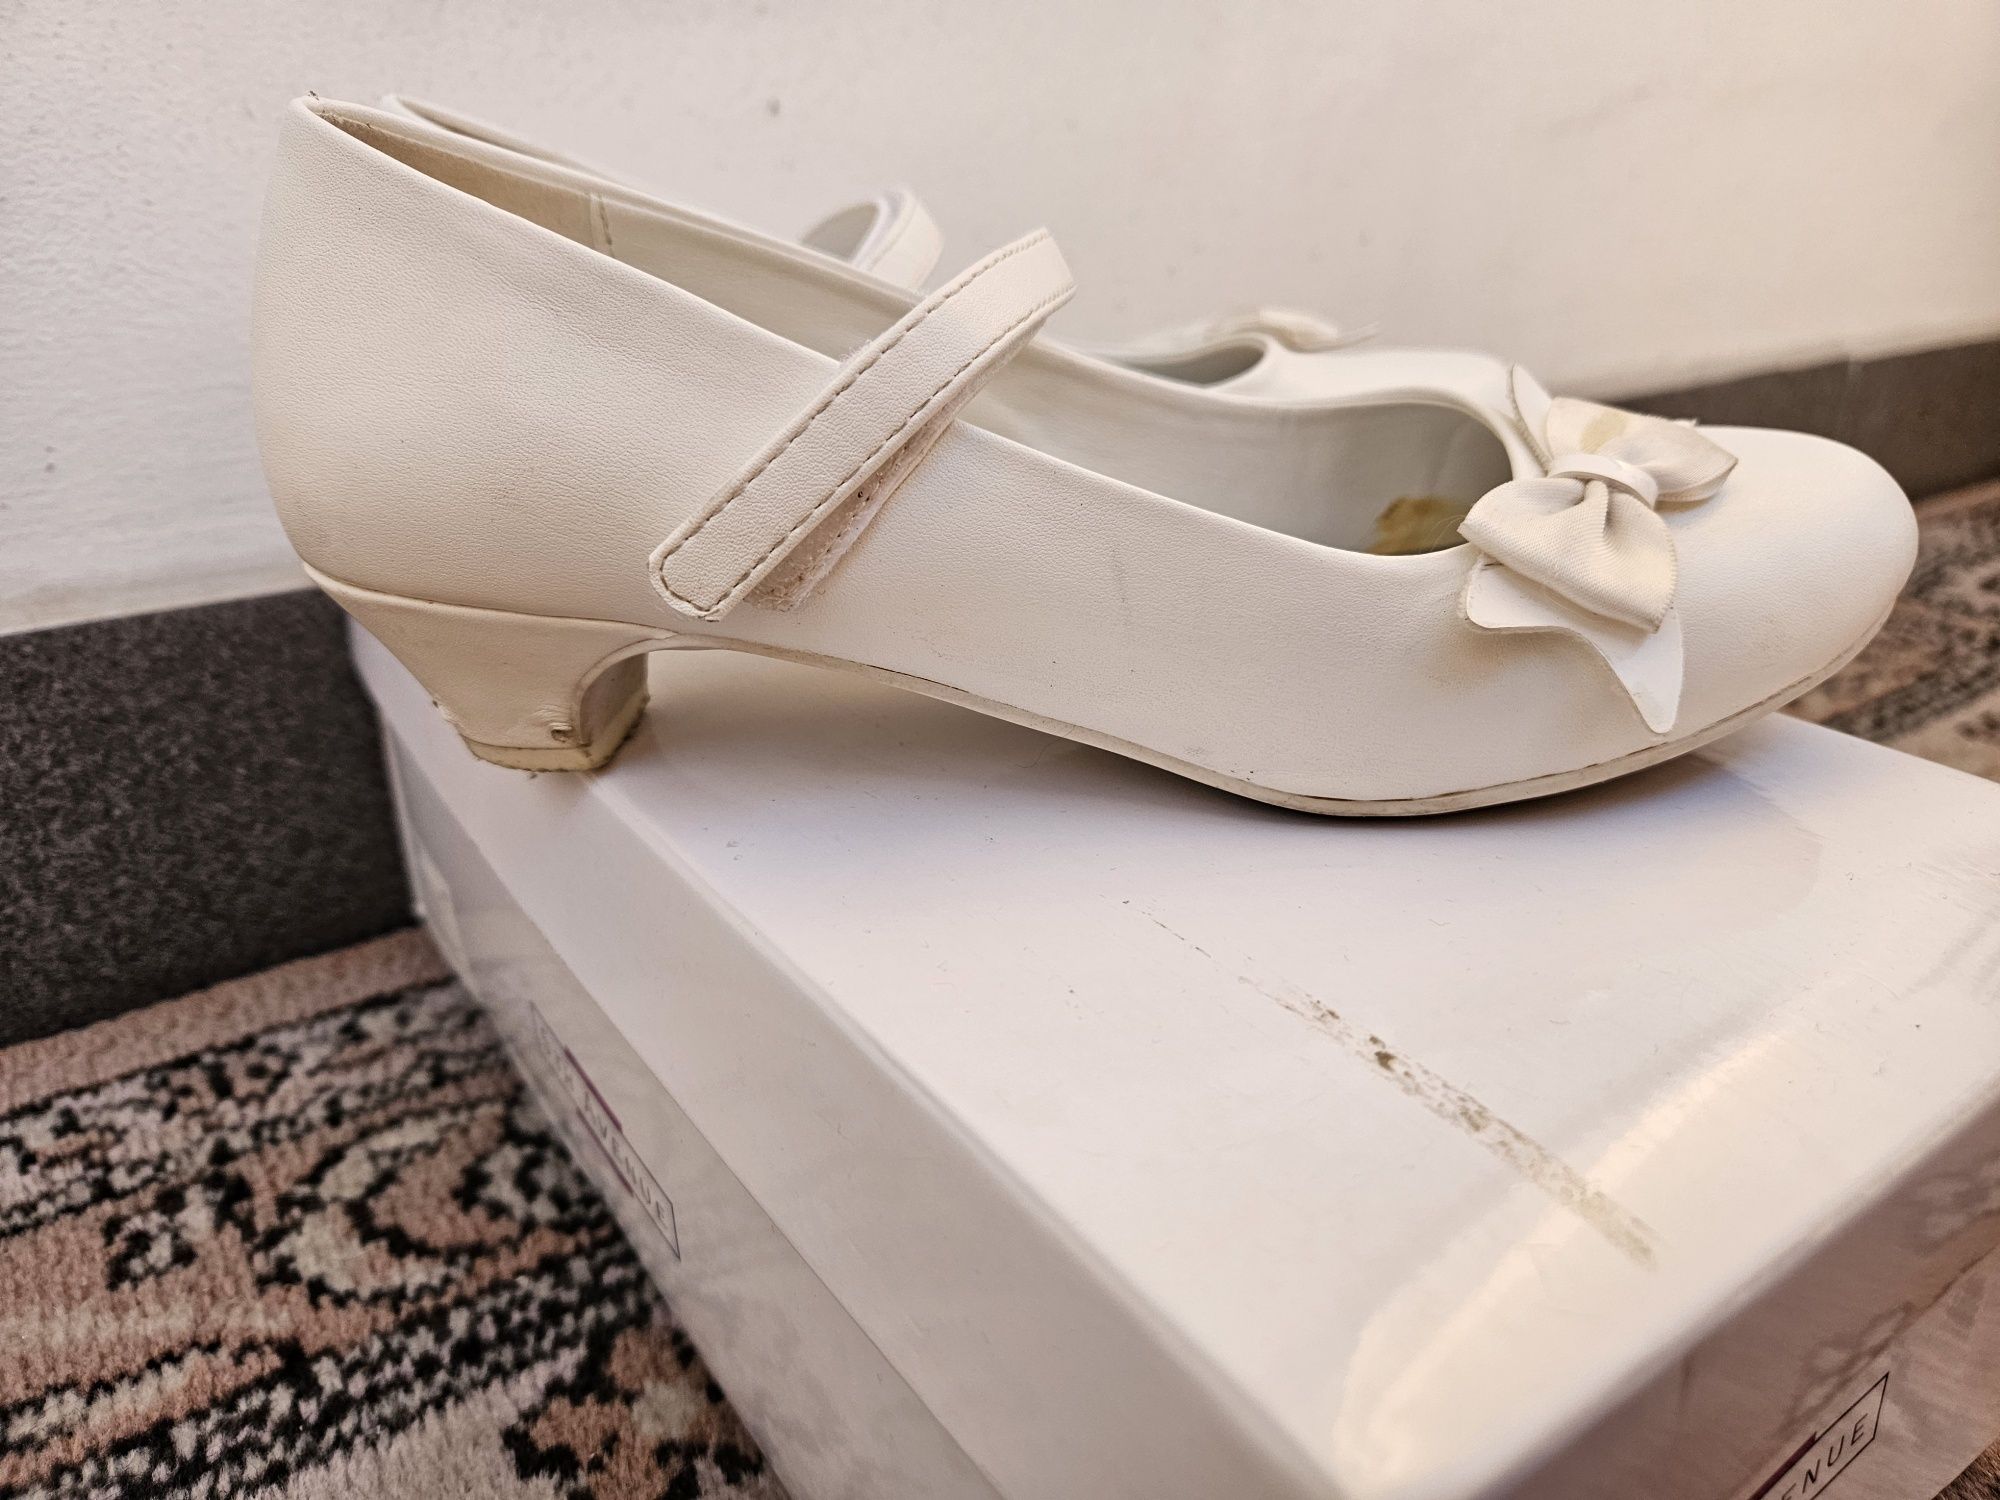 Buty, obuwie, pantofle komunijne roz. 34 firmy Graceland